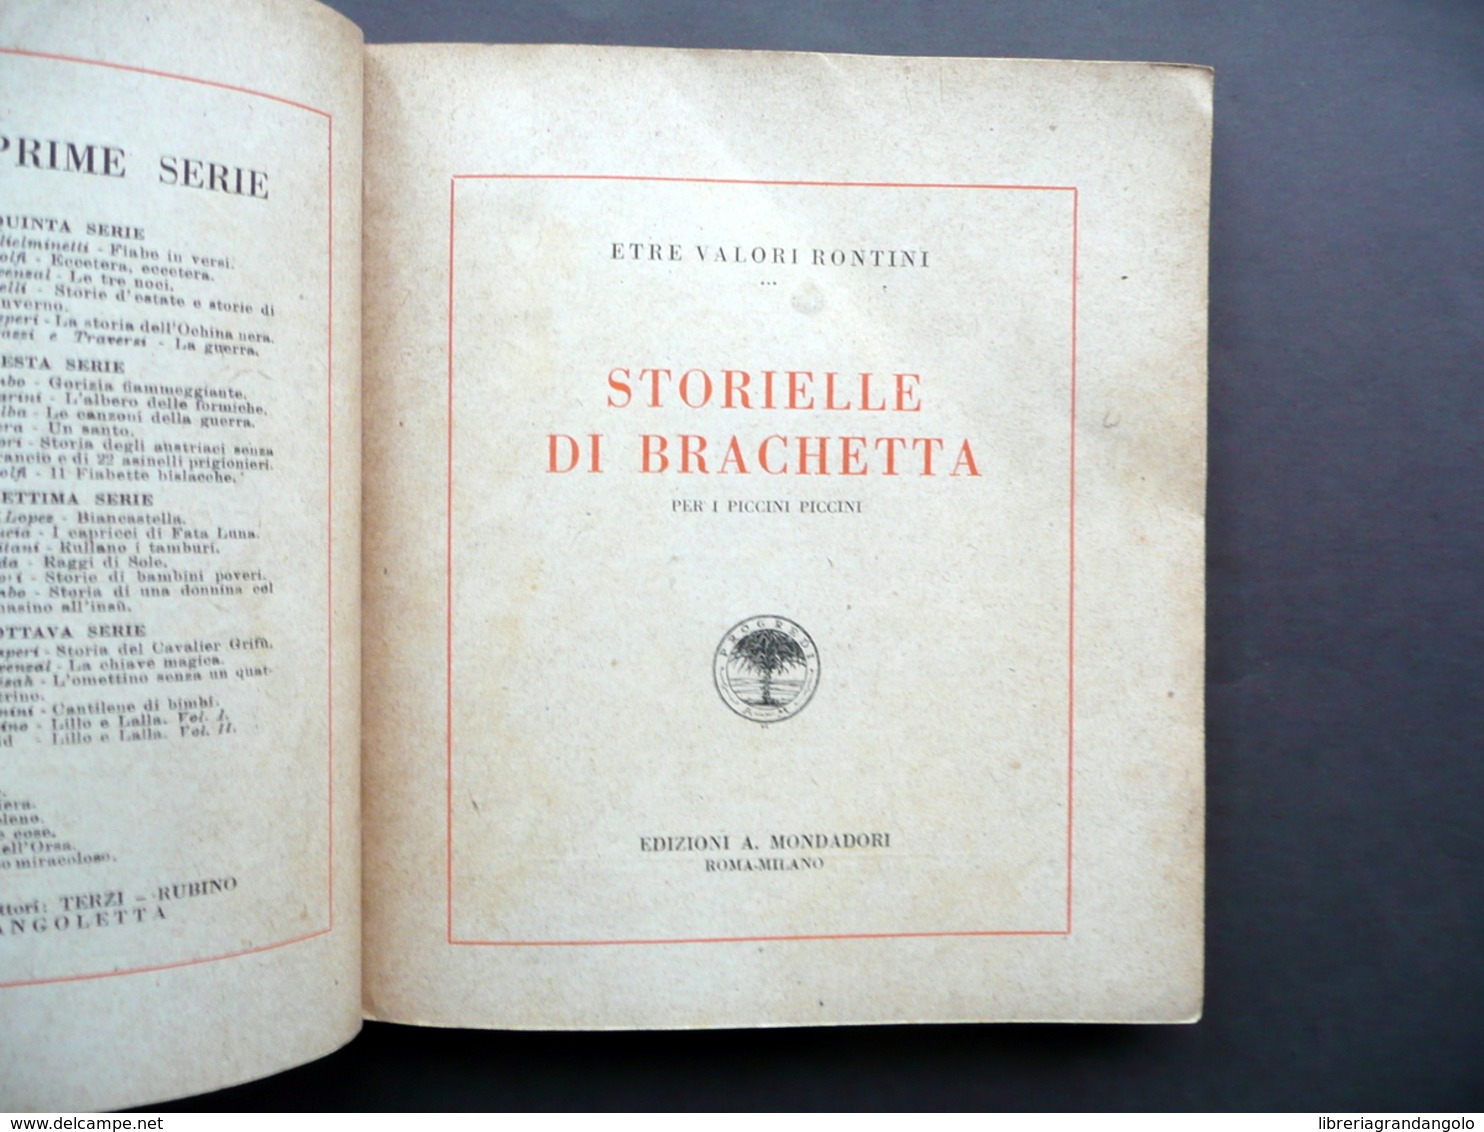 Le Storielle Di Brachetta Etre Valori Rontini Mondadori 1923 Disegni A. Rubino - Non Classificati